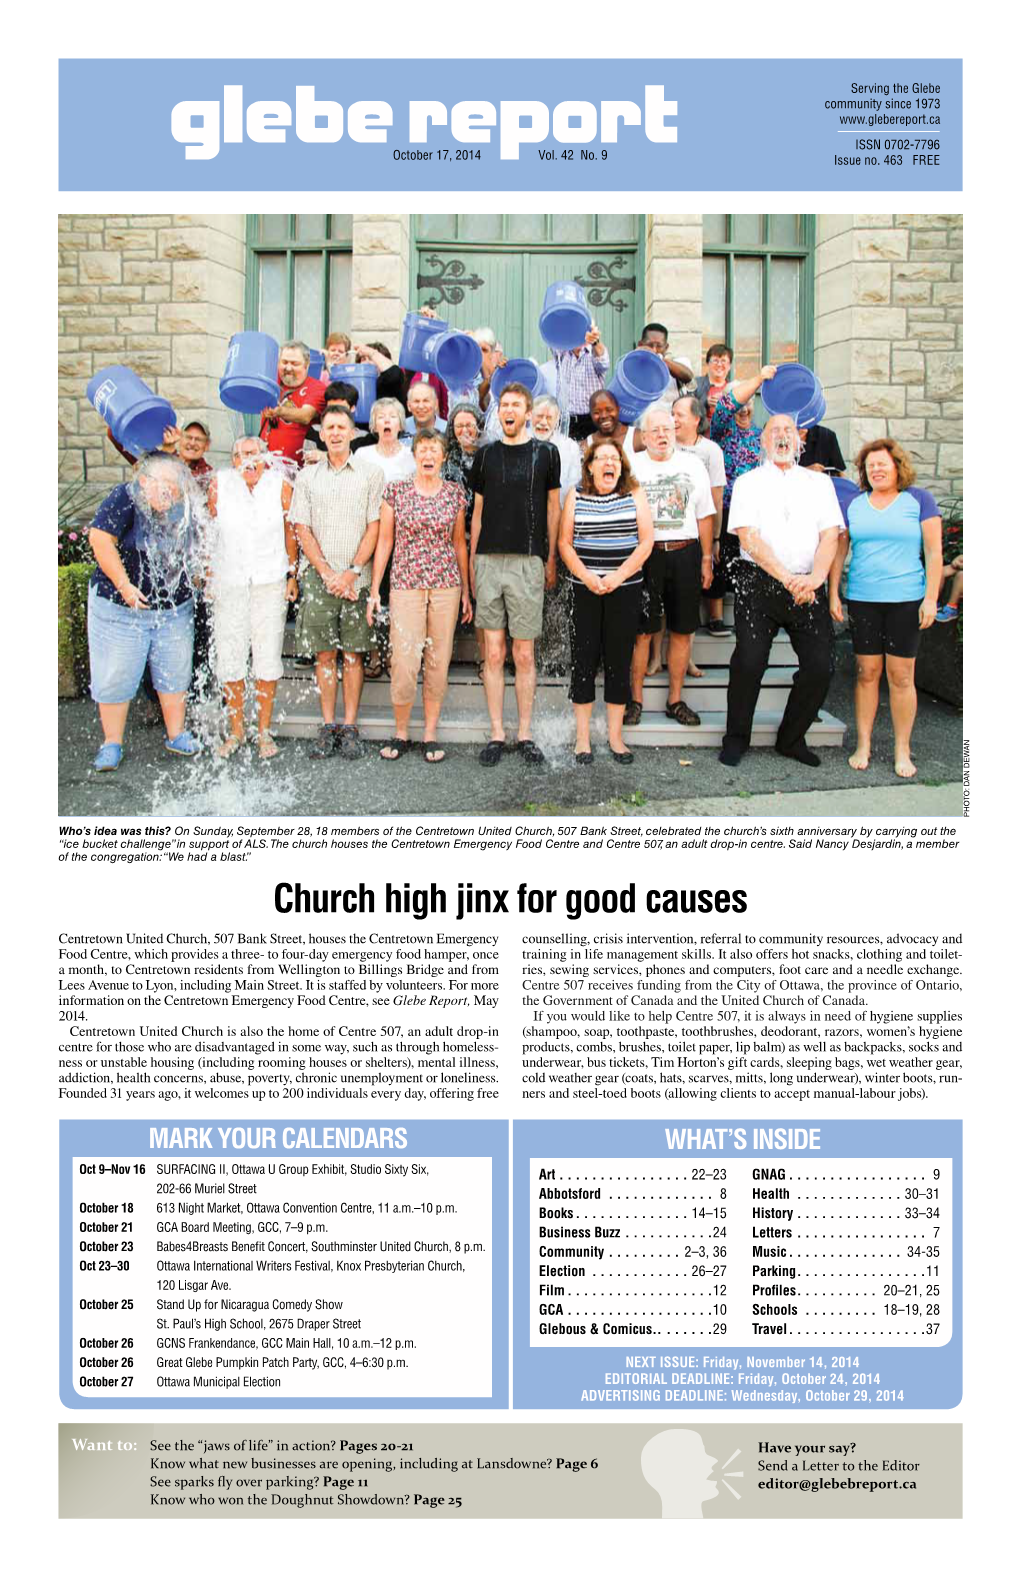 Church High Jinx for Good Causes